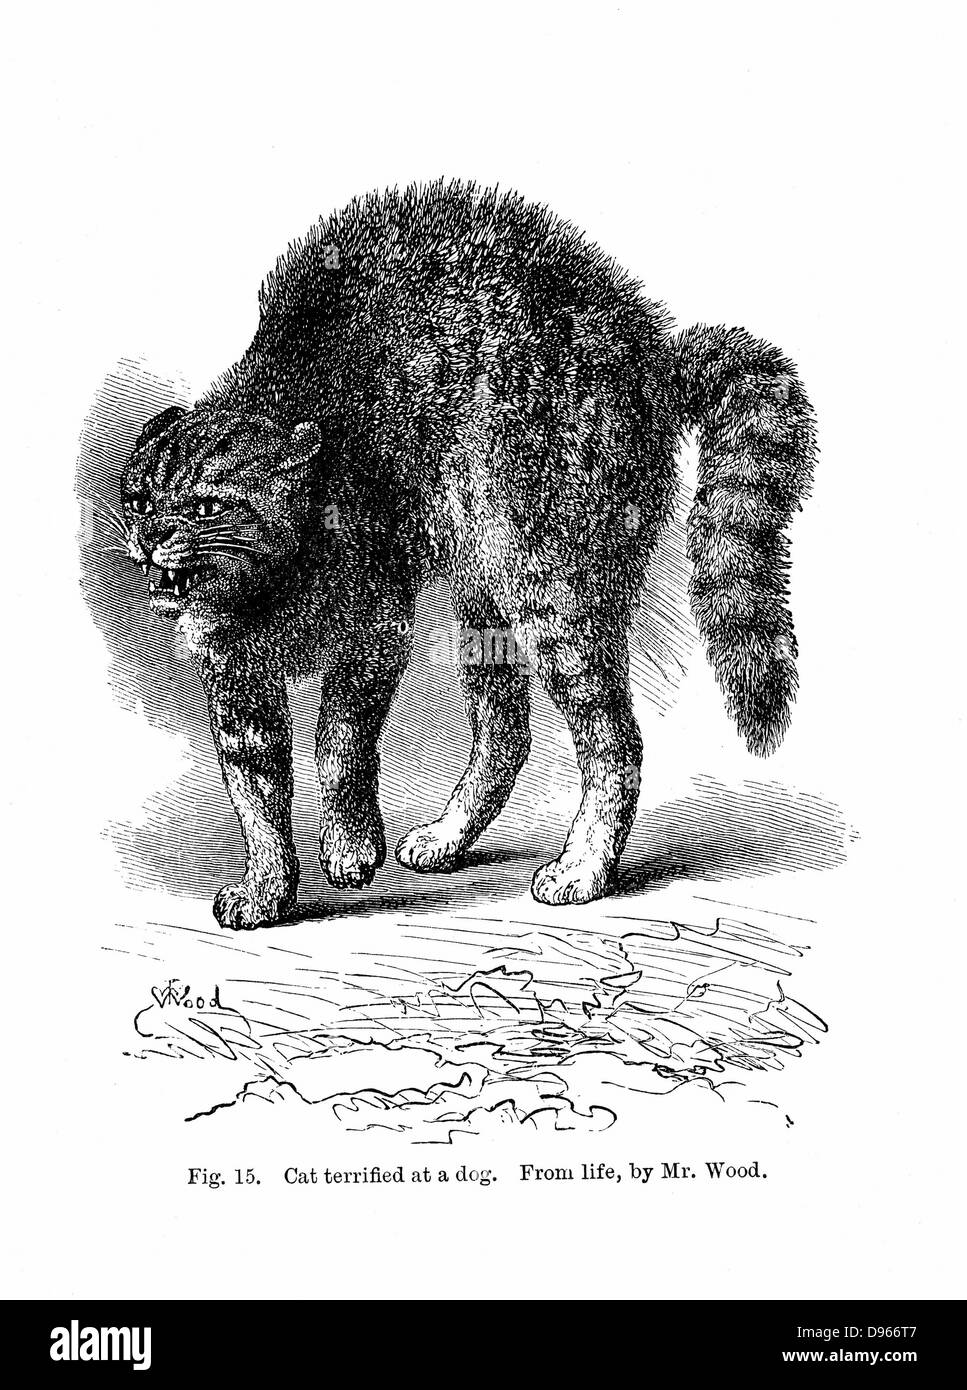 Gatto terrorizzato da un cane. Da Charles Darwin 'l'espressione ed emozioni in uomo e animali", Londra, 1872. Incisione Foto Stock